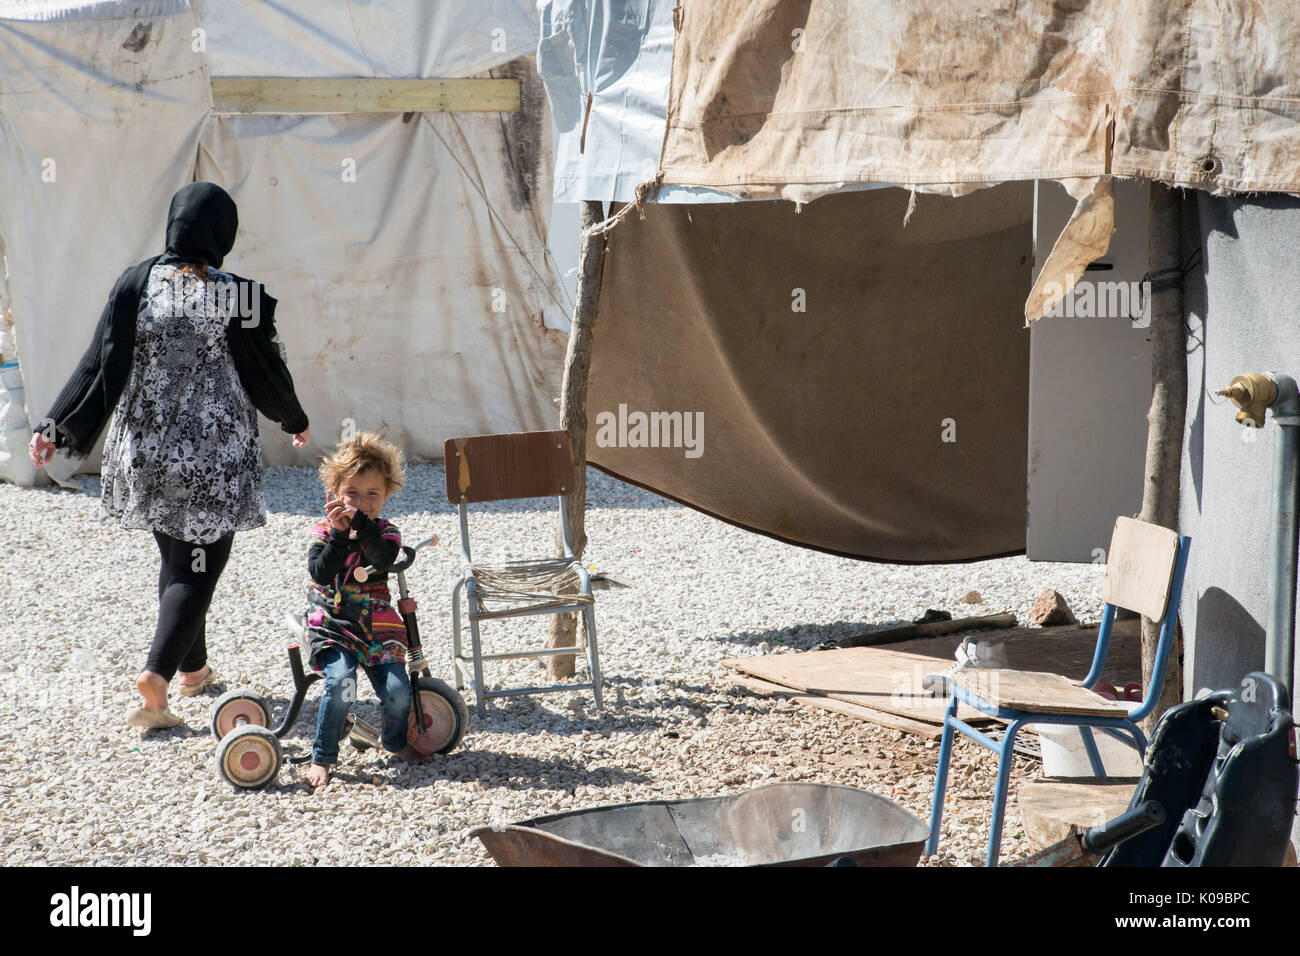 Au camp Ritsona en Grèce pour les réfugiés syriens, un enfant aux pieds nus sur un tricycle regarde la caméra comme une femme adulte ( retour à la caméra) s'éloigne. Banque D'Images